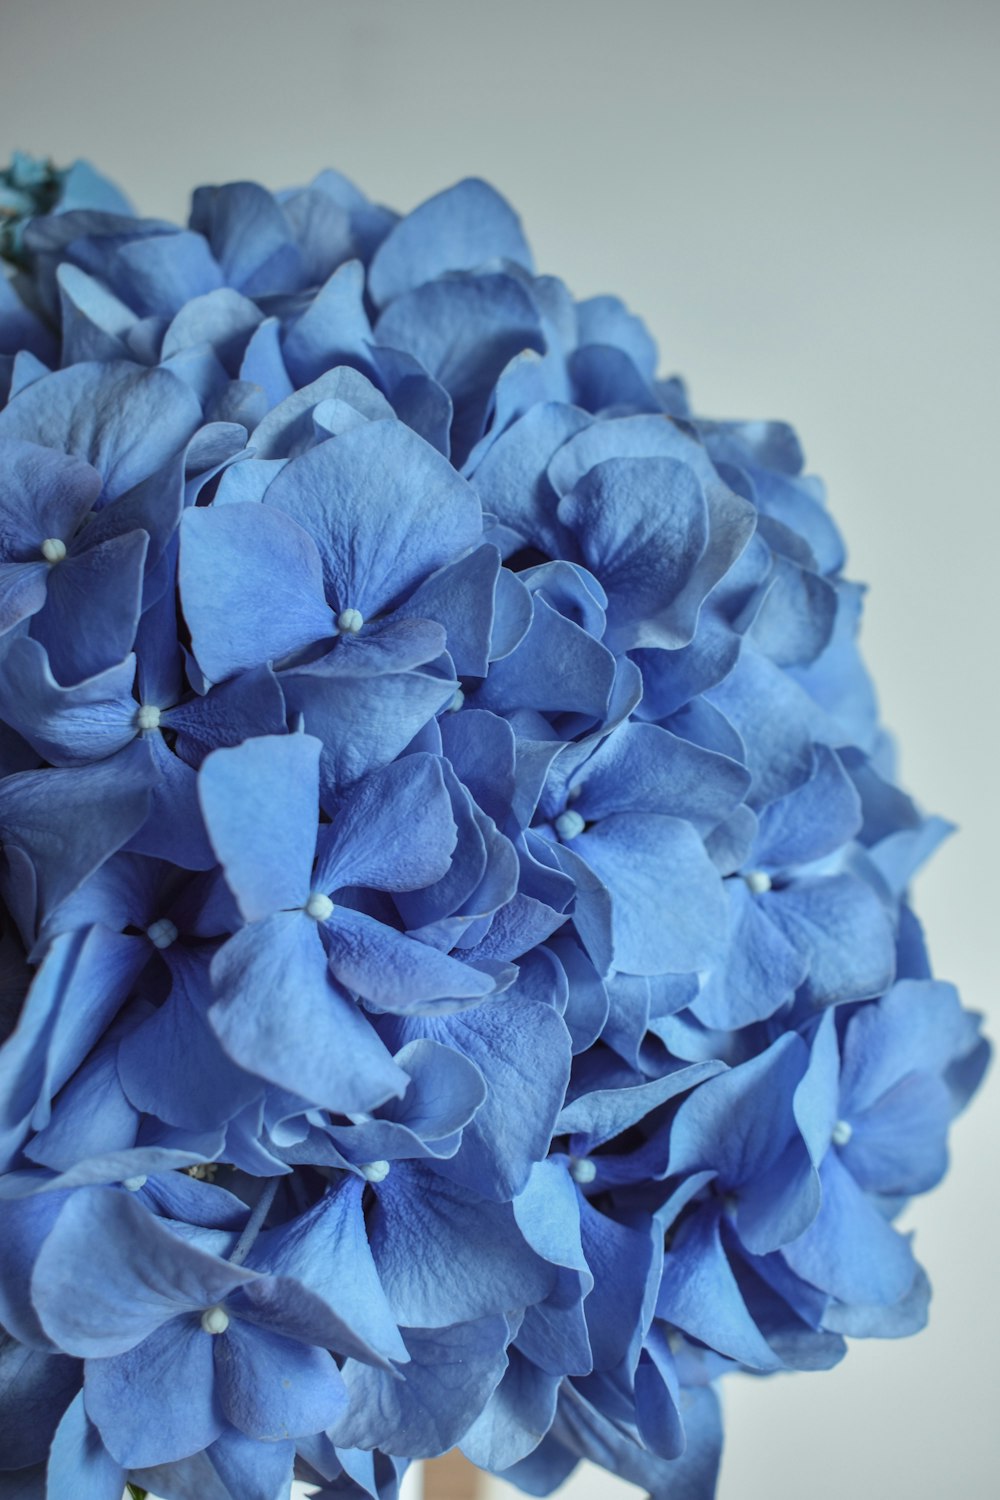 クローズアップ写真の青い花